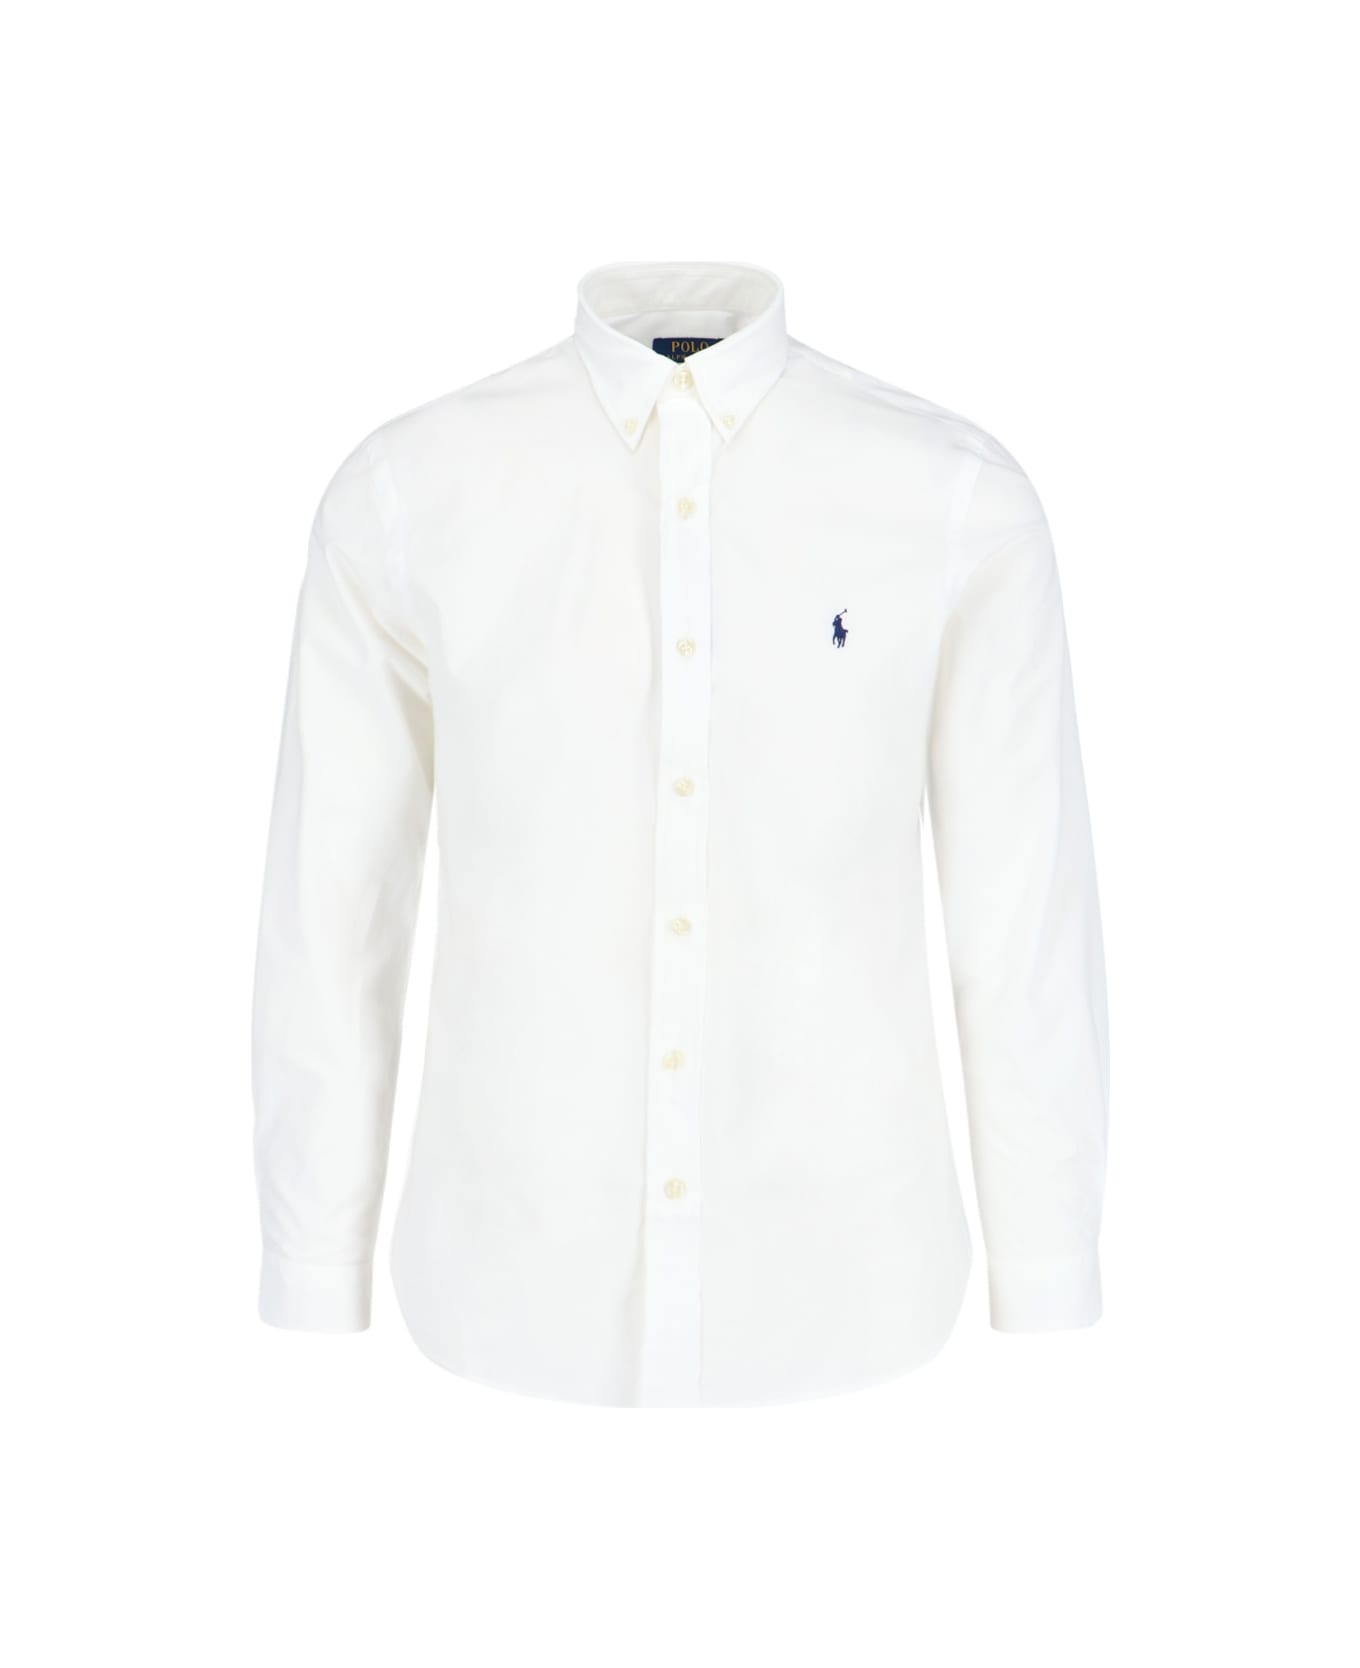 Polo Ralph Lauren Logo Shirt - 002 シャツ